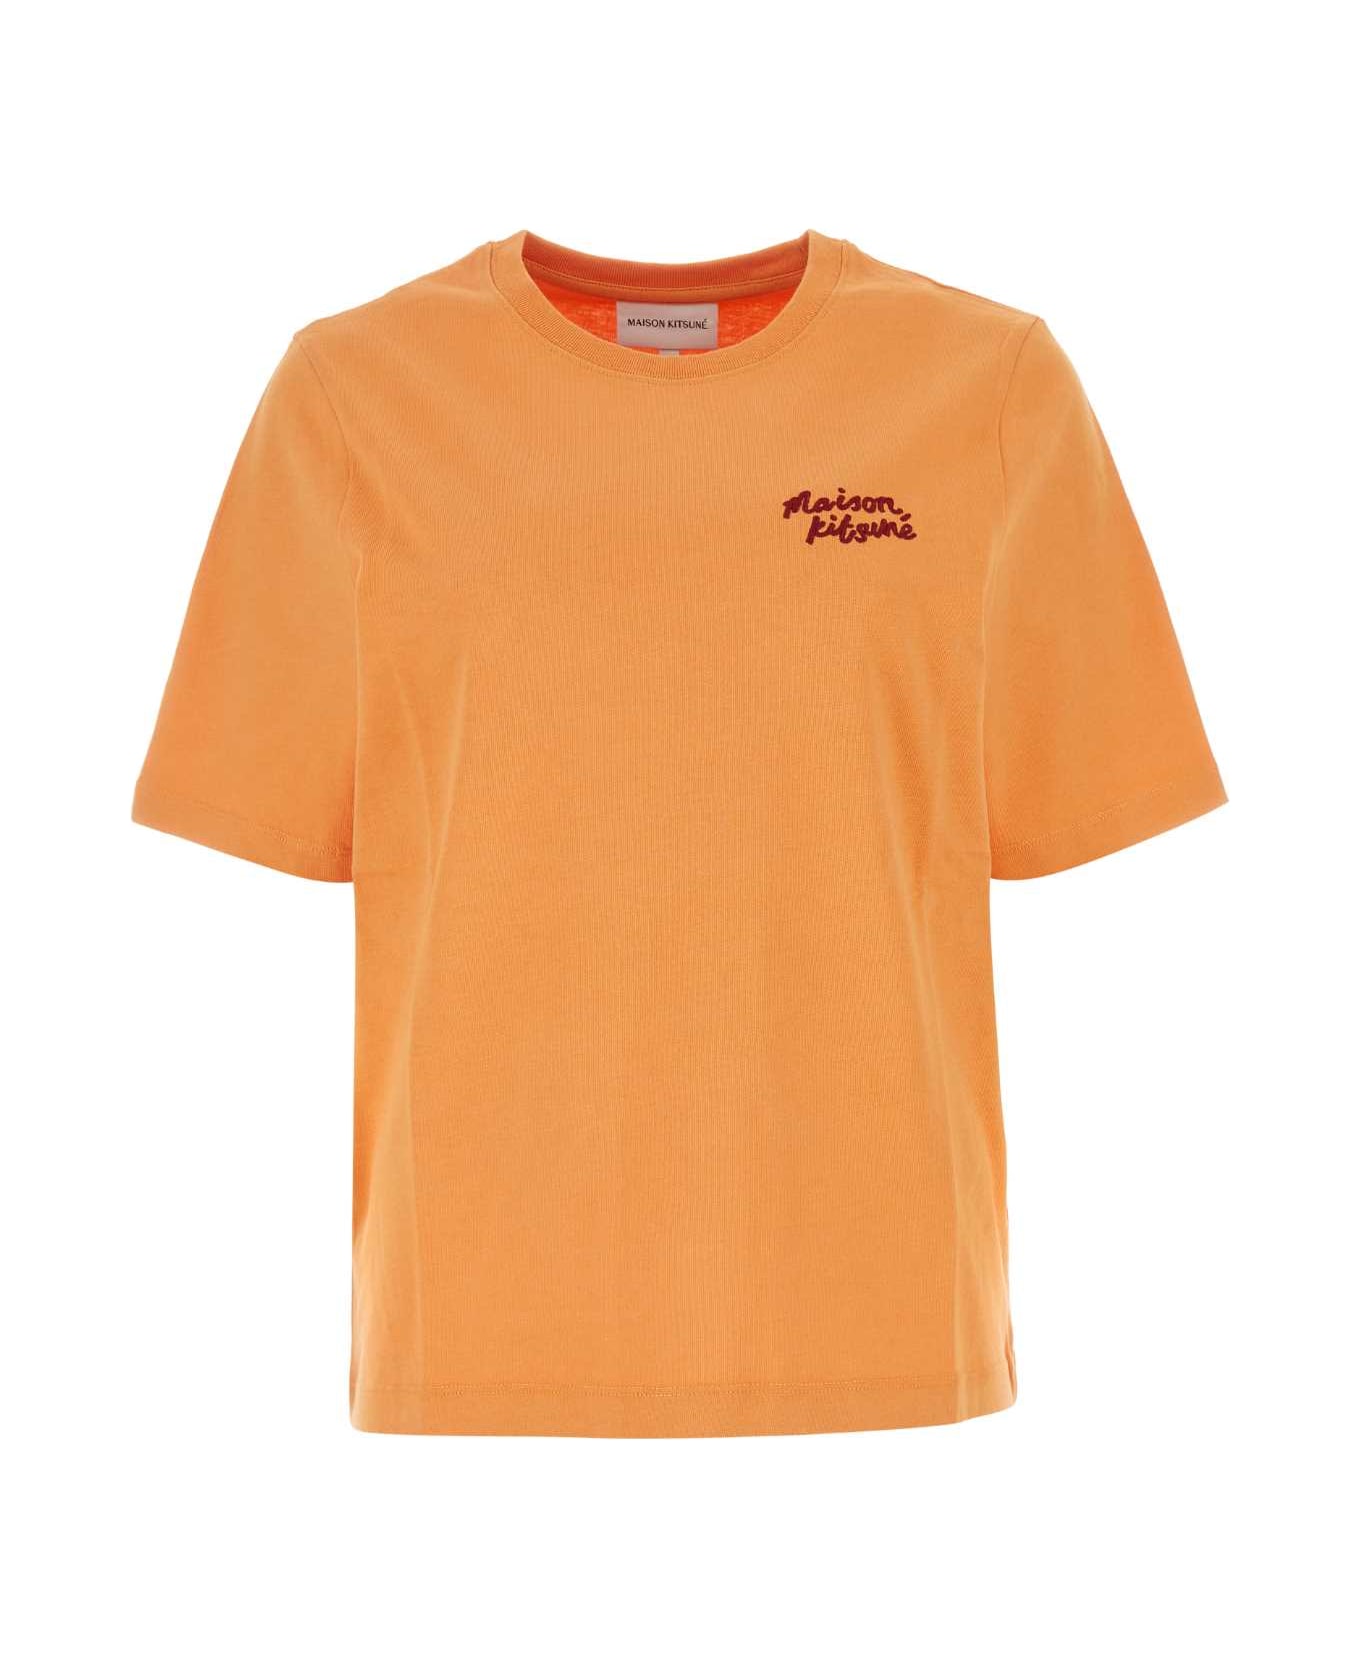 Maison Kitsuné Light Orange Cotton T-shirt - SUNSETORANGE Tシャツ